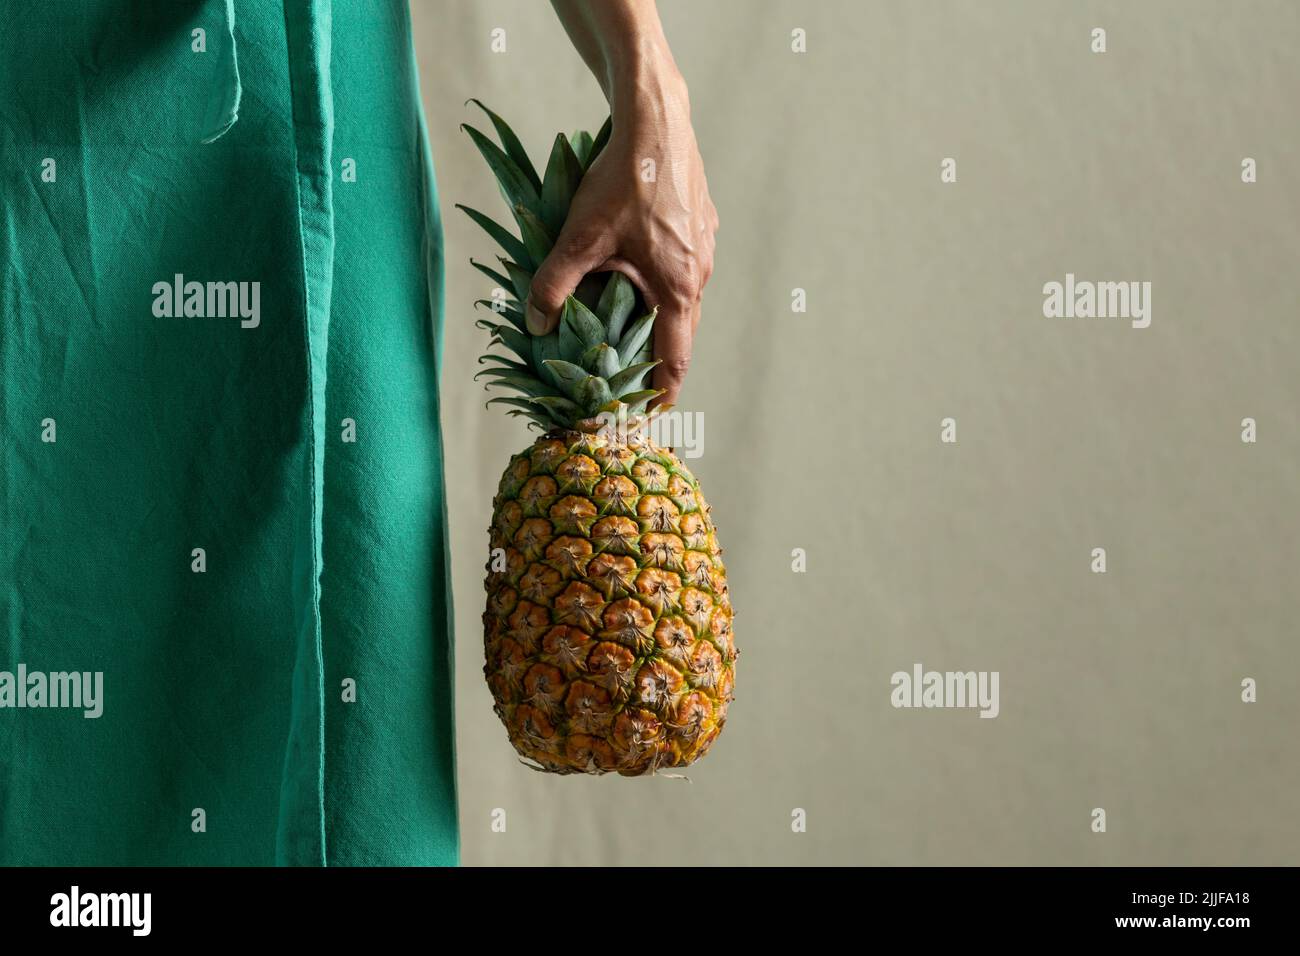 Nahaufnahme der weiblichen Hände, die eine Ananas halten - Stockfoto Stockfoto